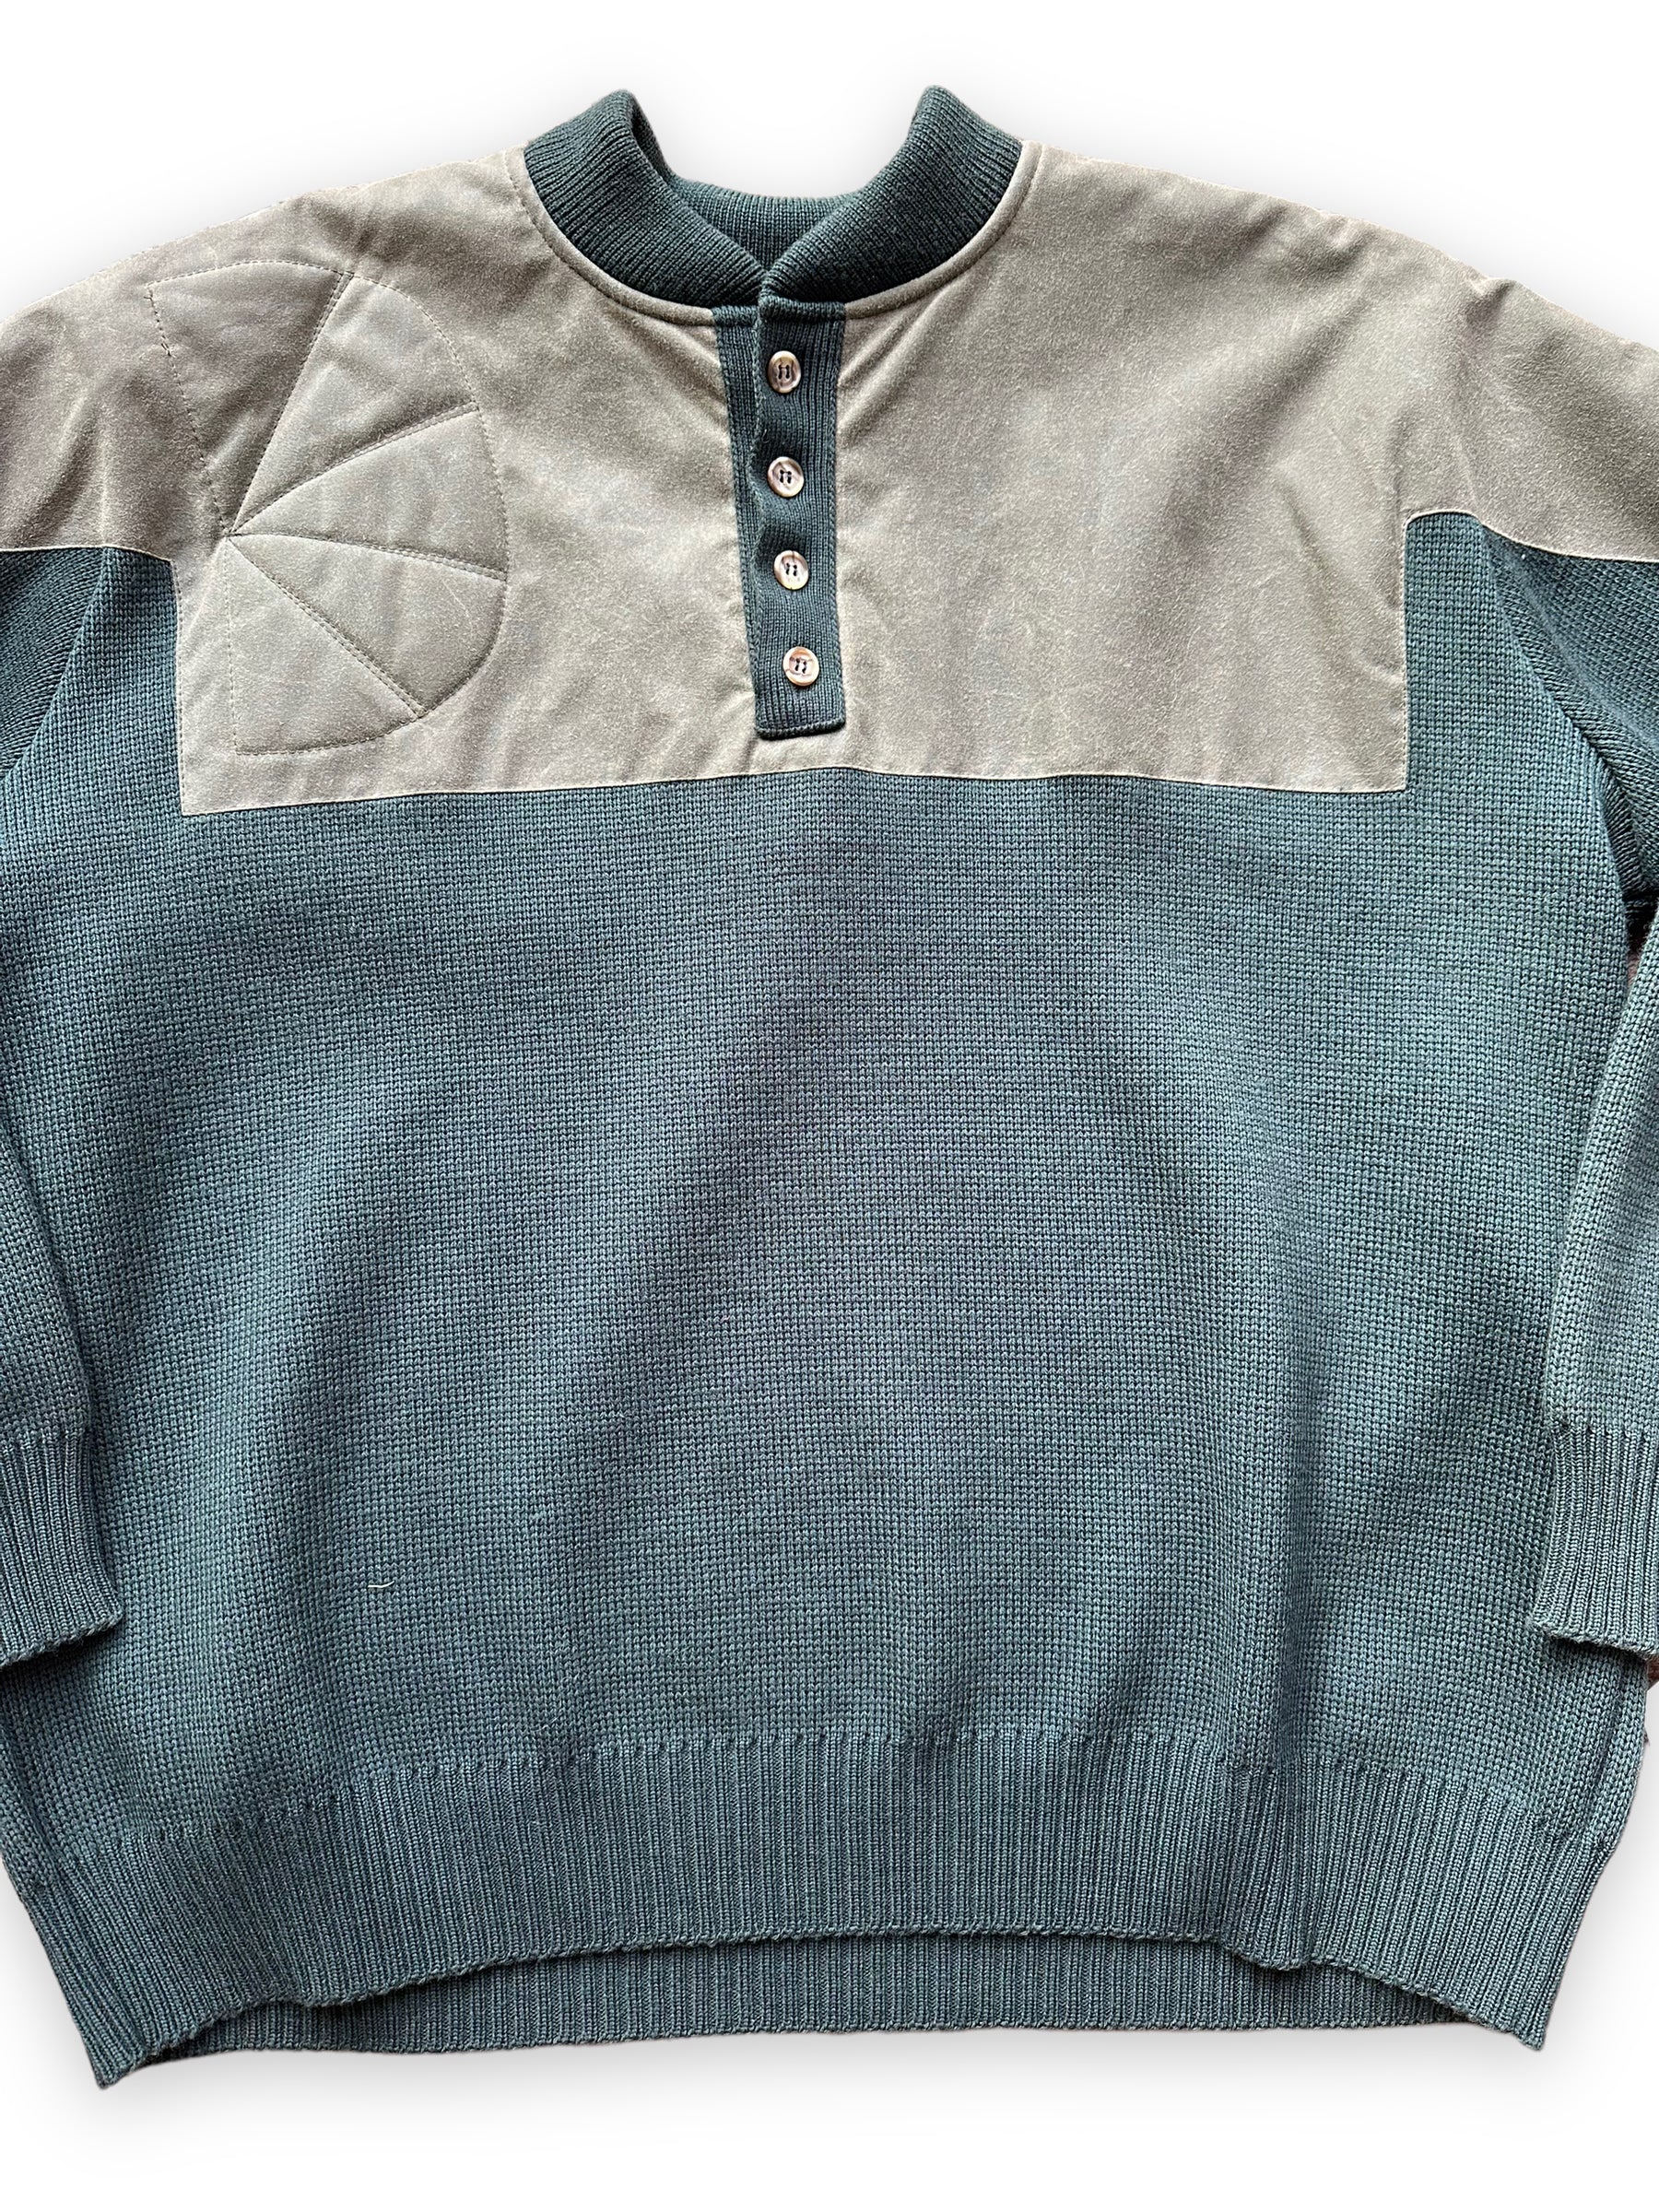 Front Detail of Deadstock Filson Guide Sweater SZ XXL | Vintage Filson Workwear Seattle | Barn Owl Vintage Goods